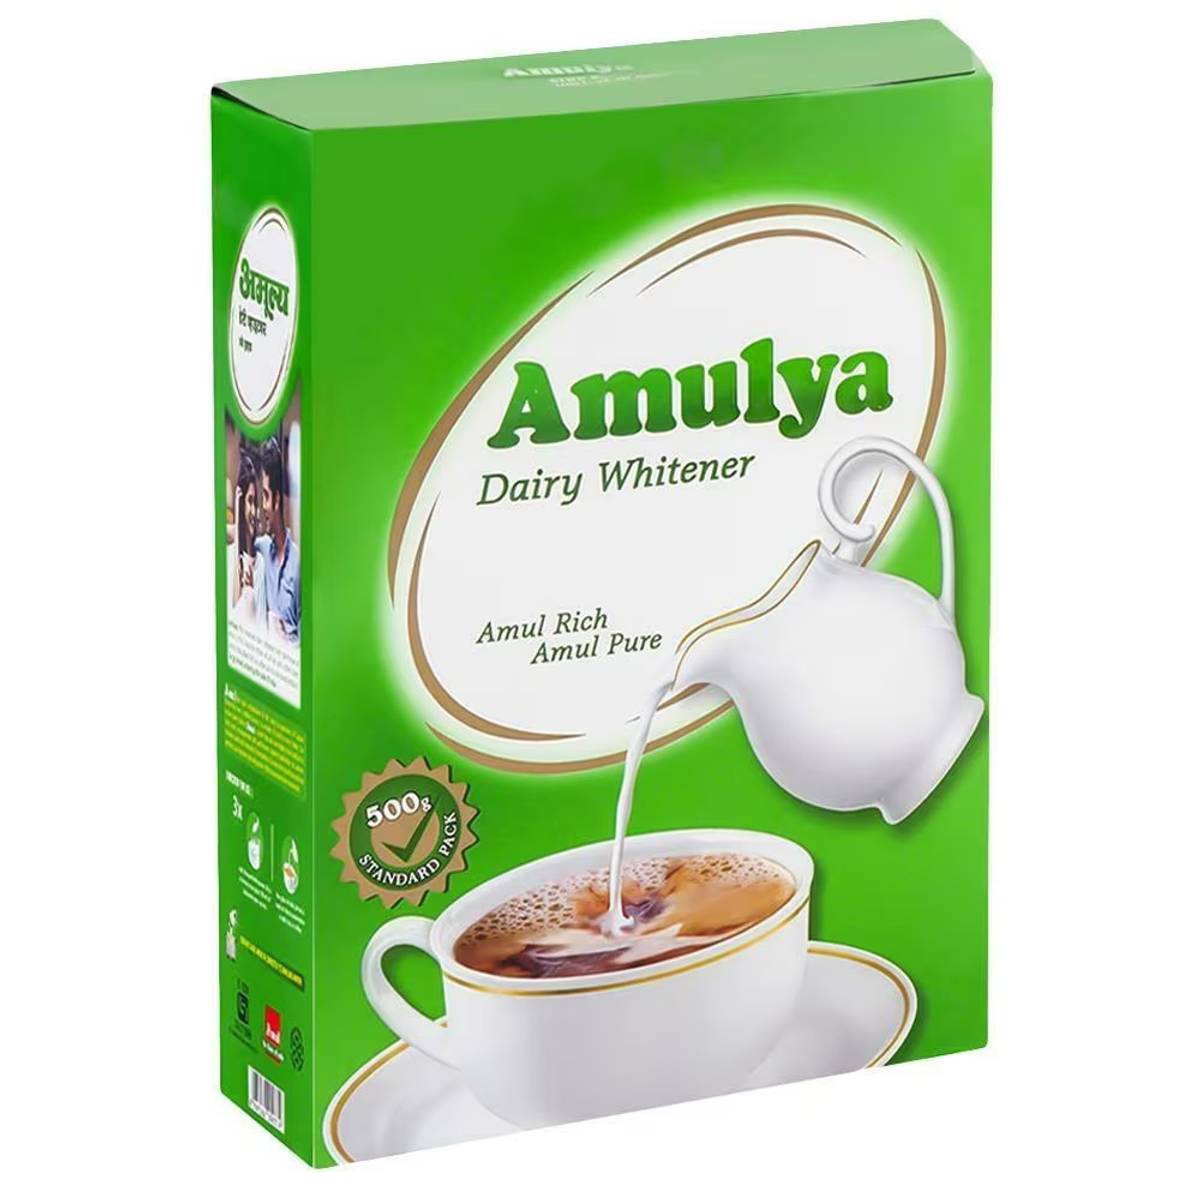 Amulya Dairy Whitener refill (200g)